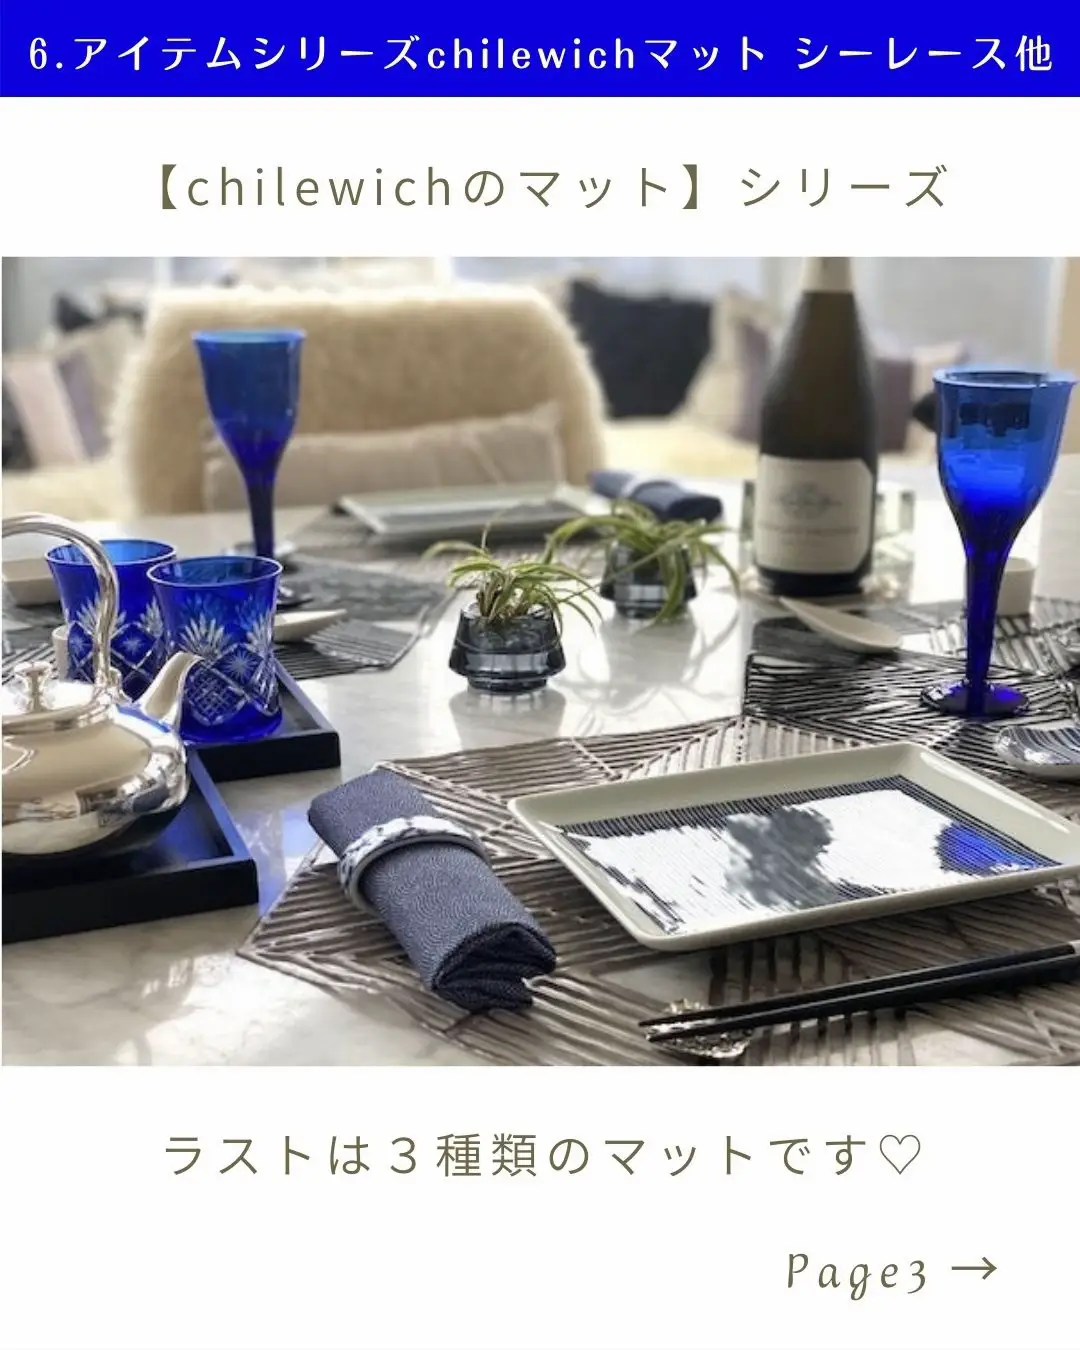 チルウィッチのテーブルマット6. ピンウィール・ネスト・シー